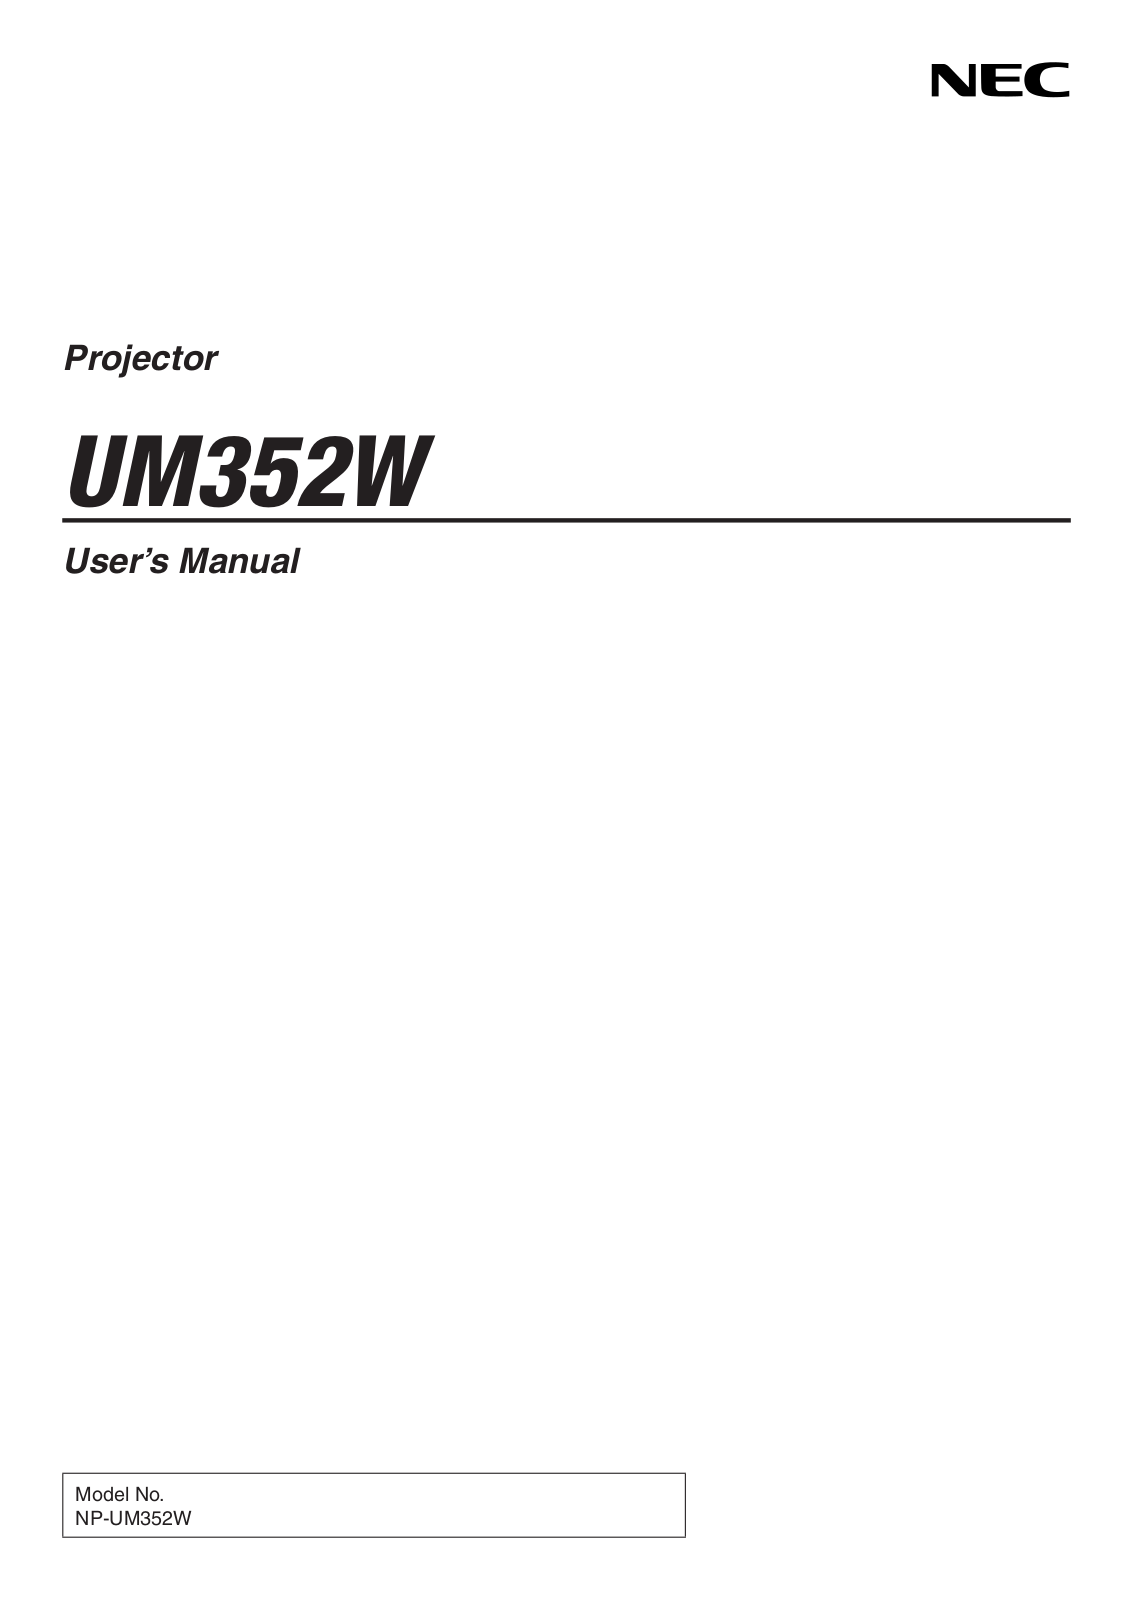 NEC UM352W-WK, UM352W-TM, UM352W User Manual